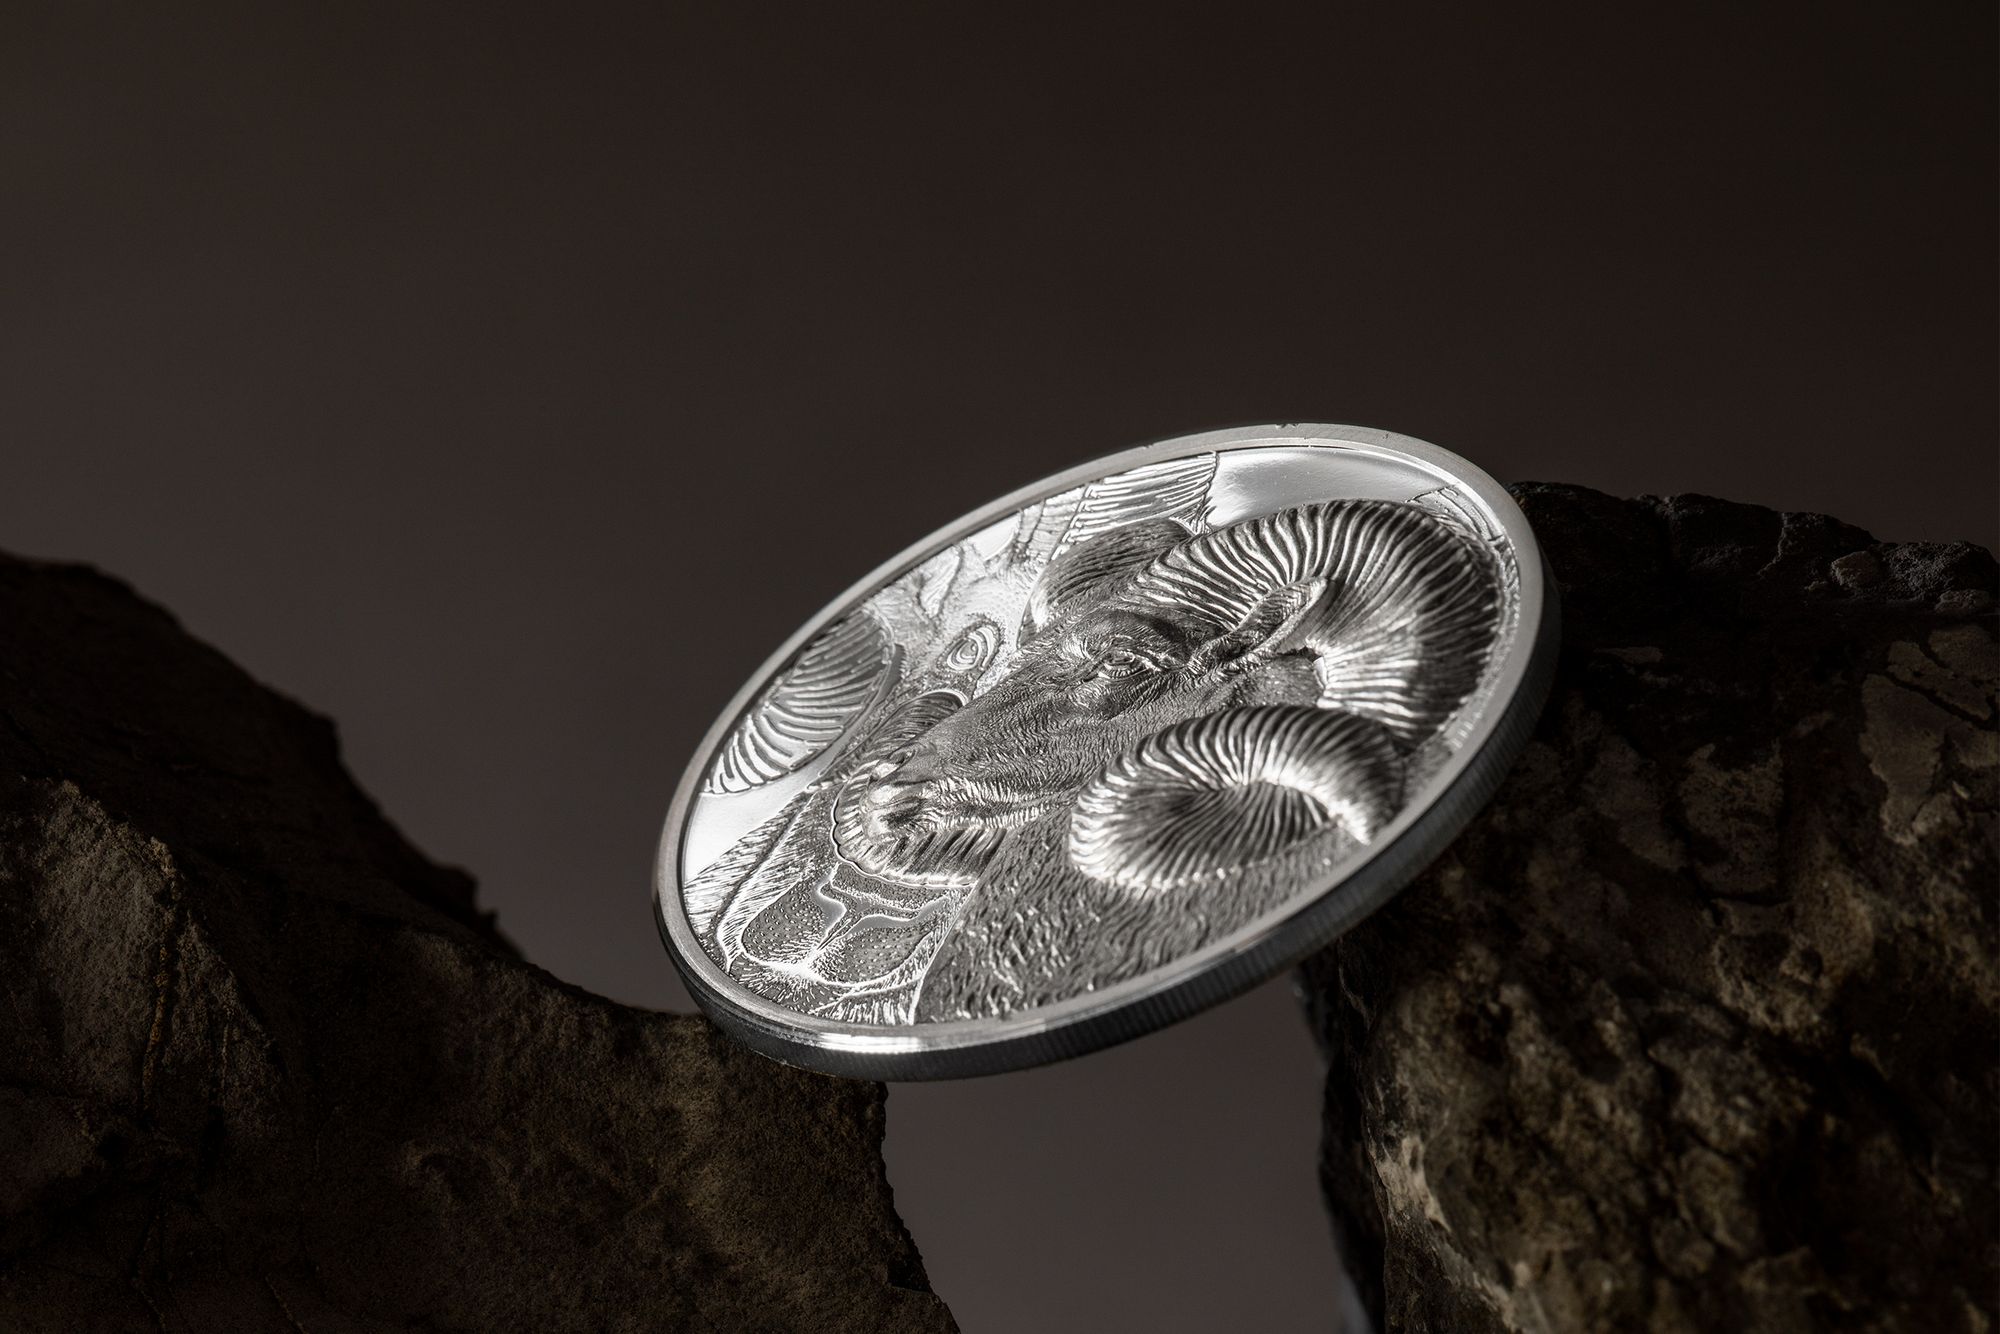 2022 Wild Mongolia Magnificent Argali 1oz Silver Coin